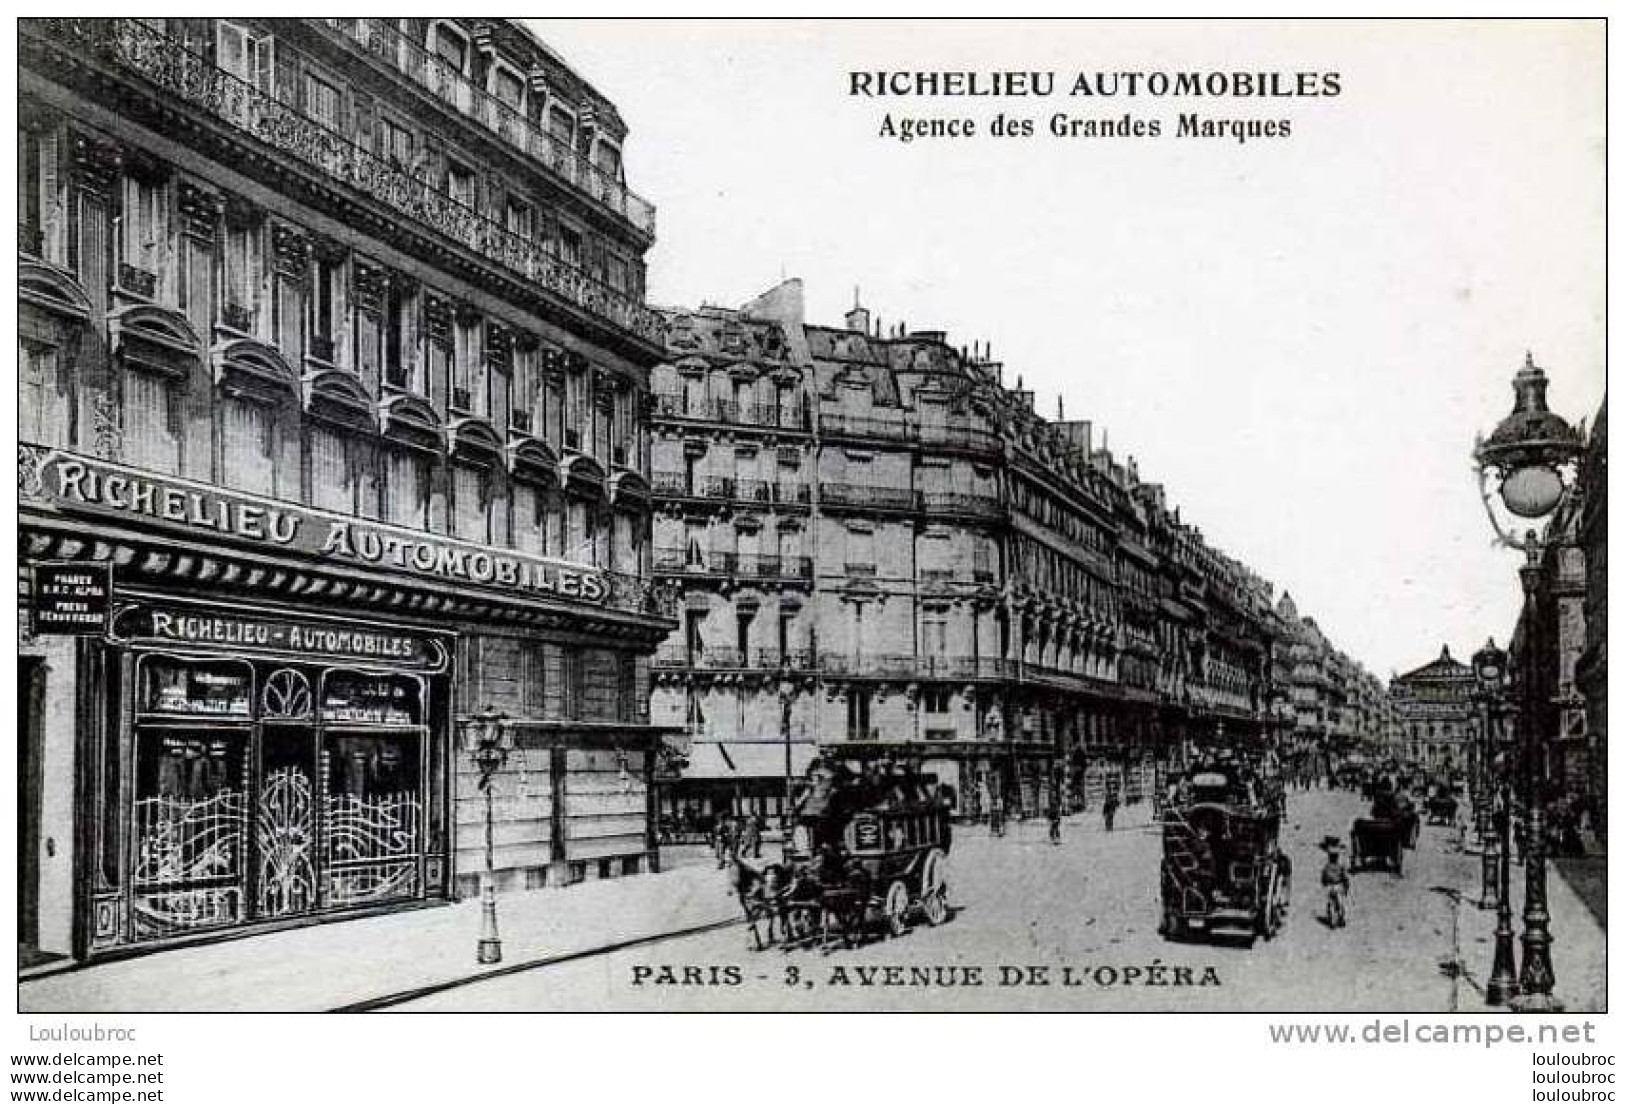 75 PARIS RICHELIEU AUTOMOBILES AGENCE DE GRANDES MARQUES 3 AVENUE DE L'OPERA - District 02